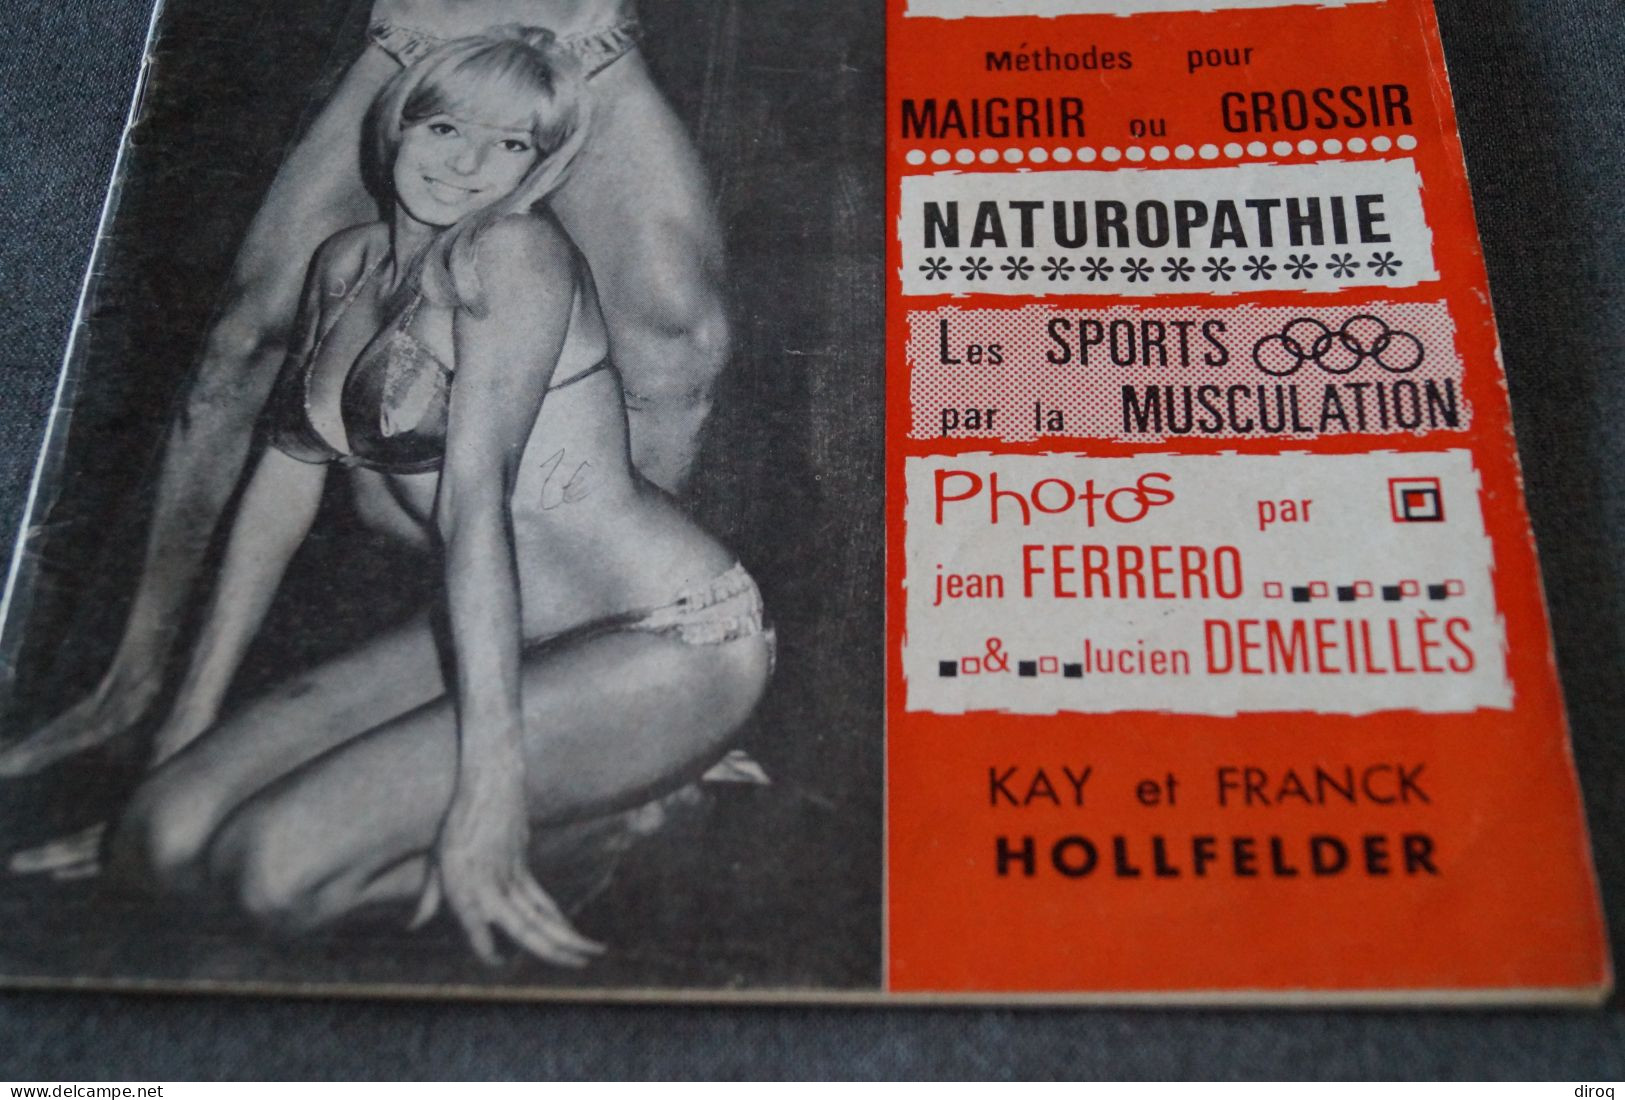 Kay Et Franck Hollfelder,1967,culturisme,complet 37 Pages ,ancien,27 Cm. Sur 21 Cm. - Athletics